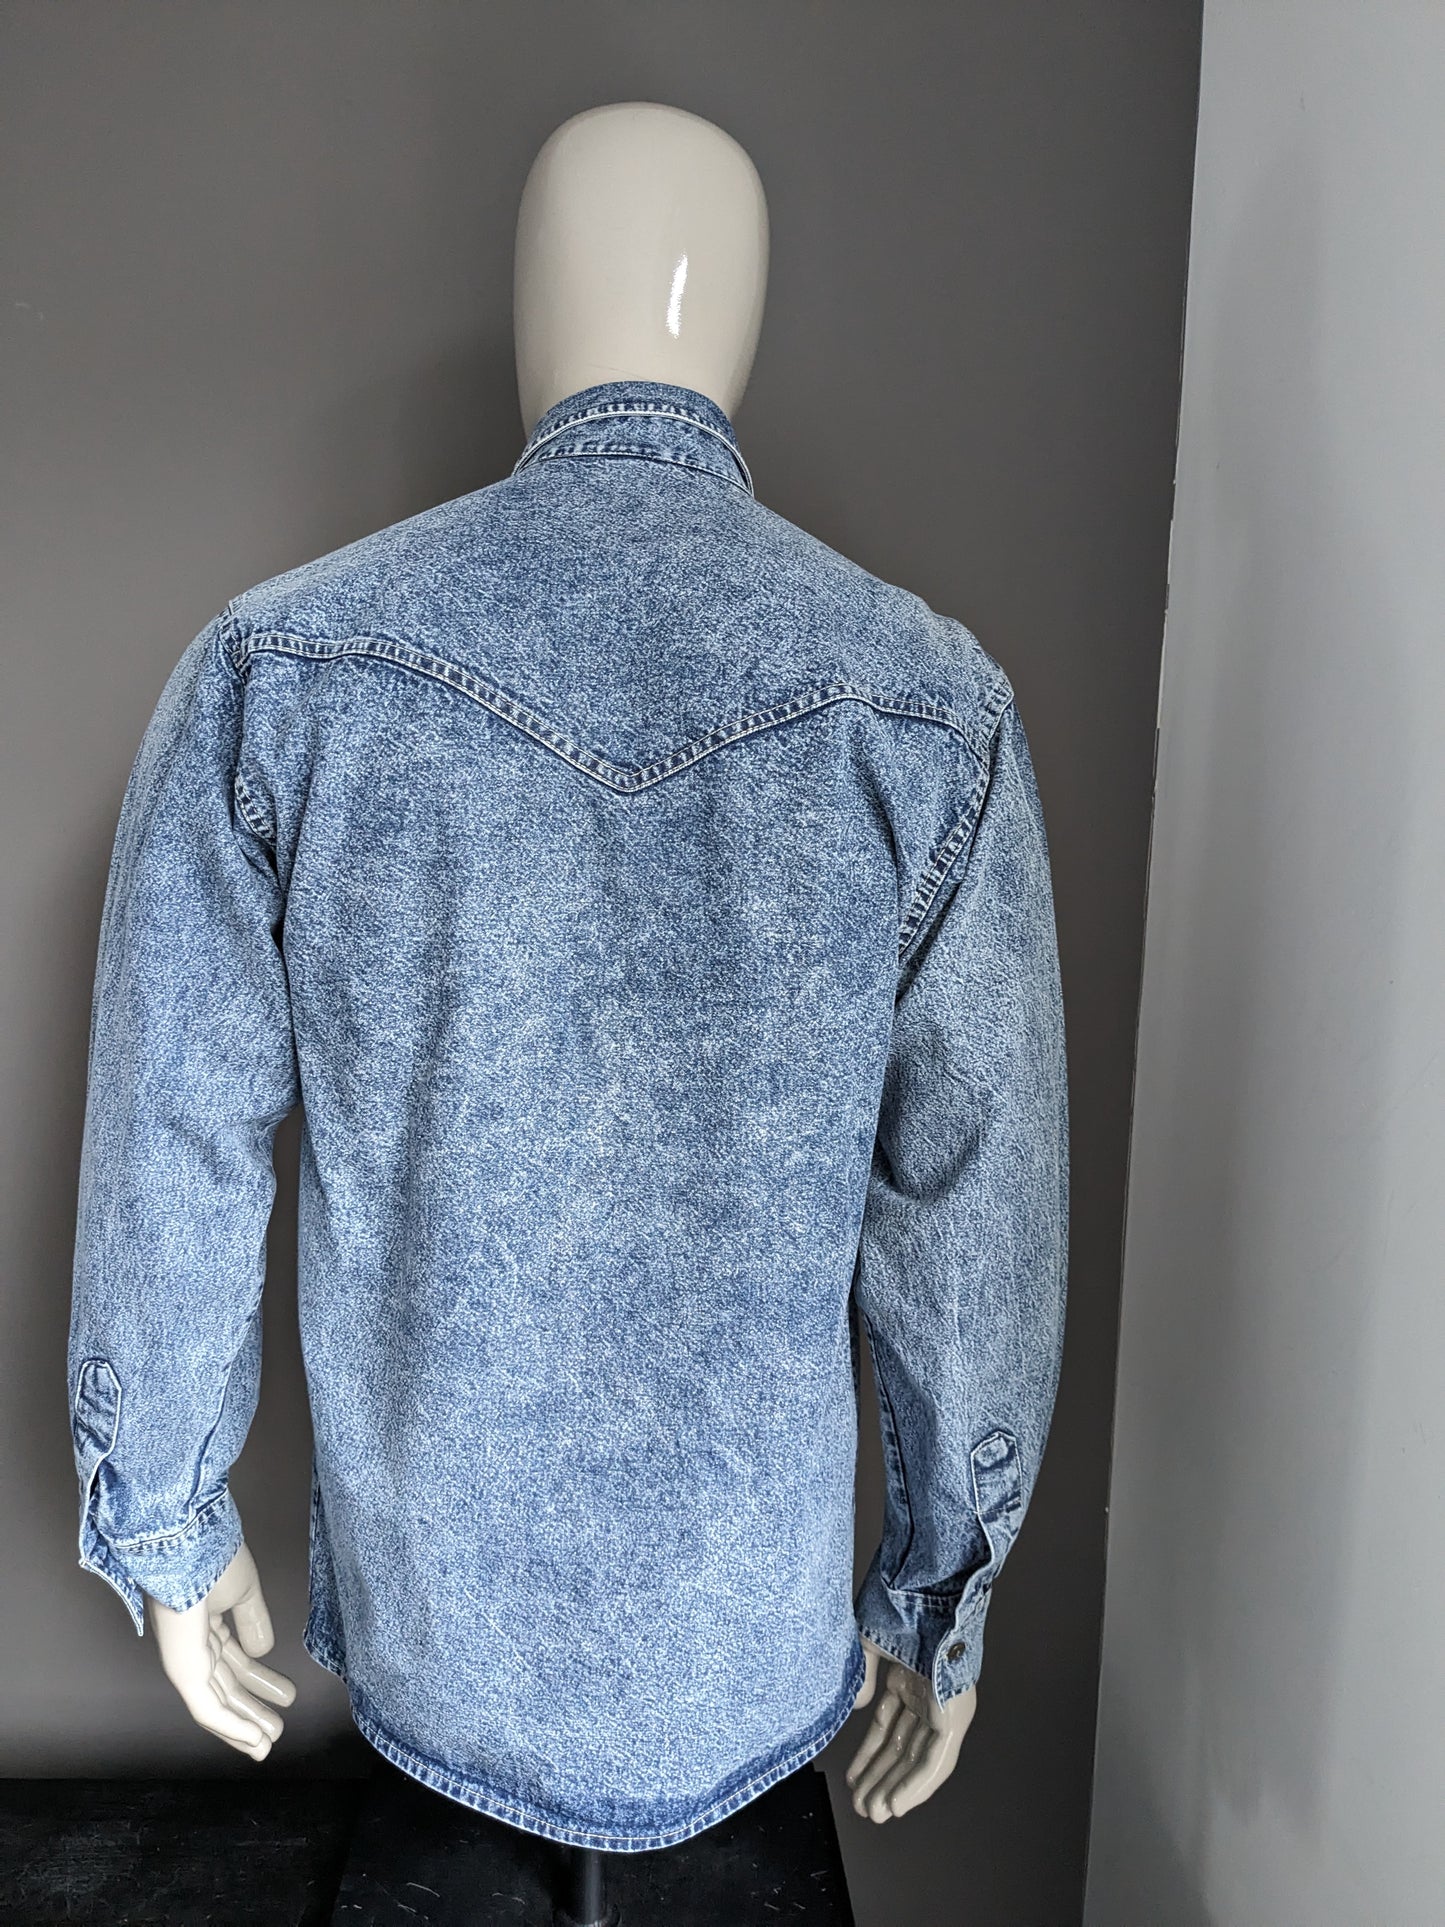 FIMTAGE FIMSE Jeans Shirt Tissu plus épais. Bleu mélangé. Taille L.